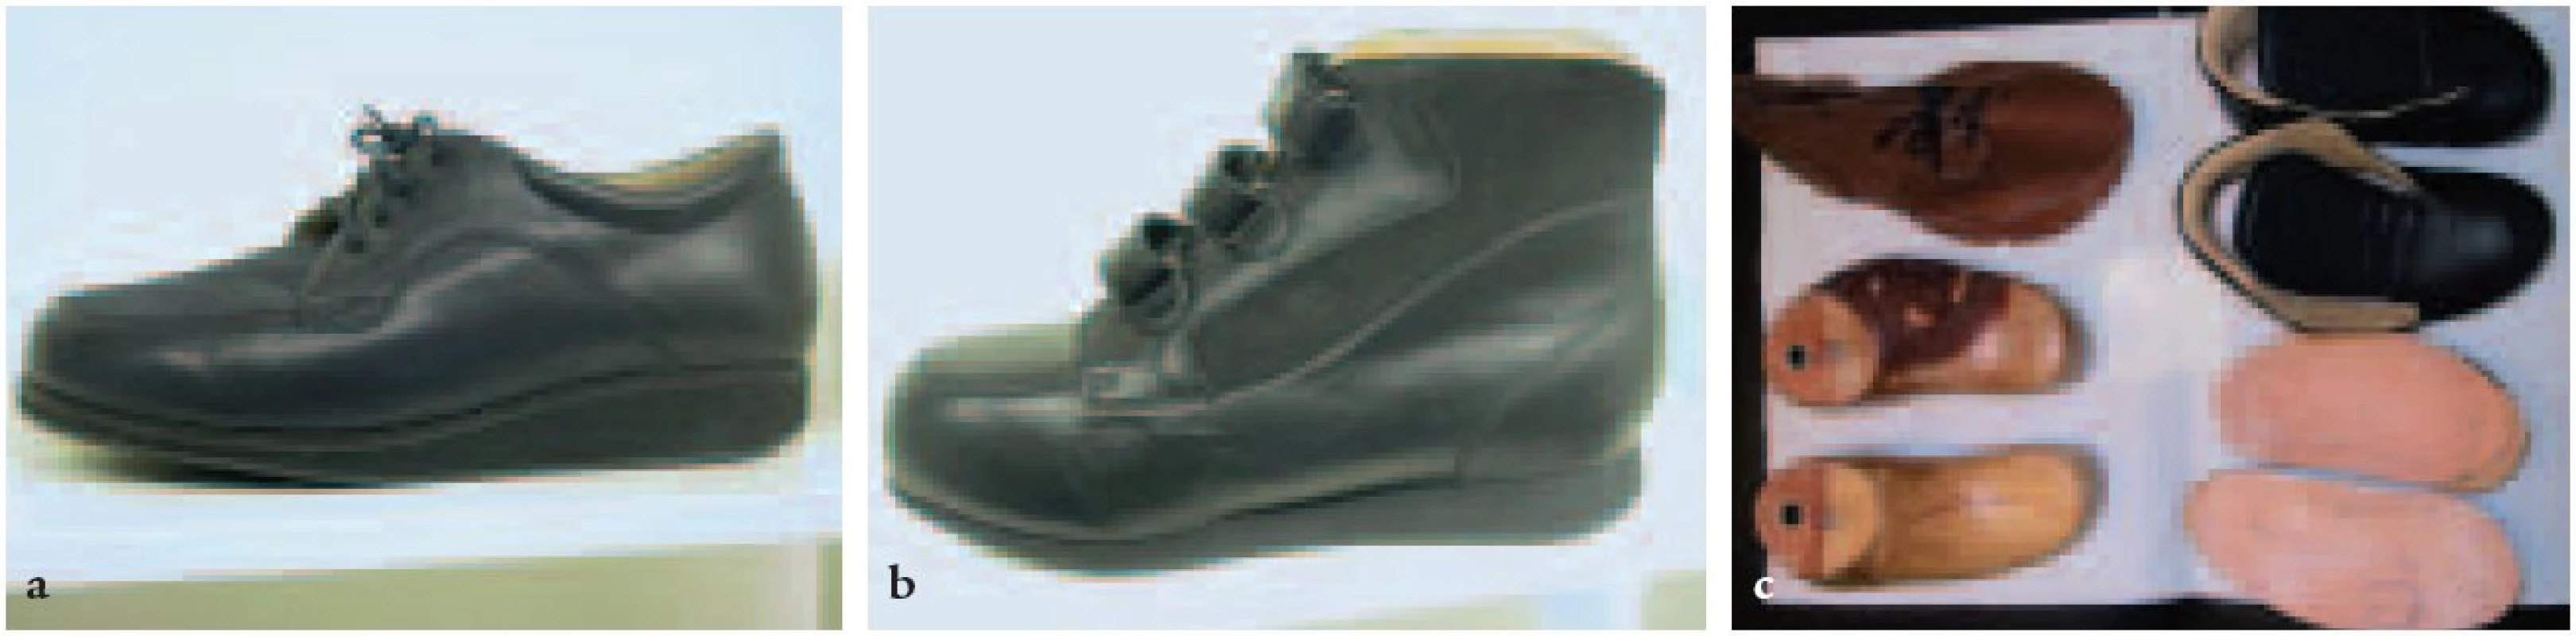 Individuální obuv. C: Rozpracovaná individuální obuv.